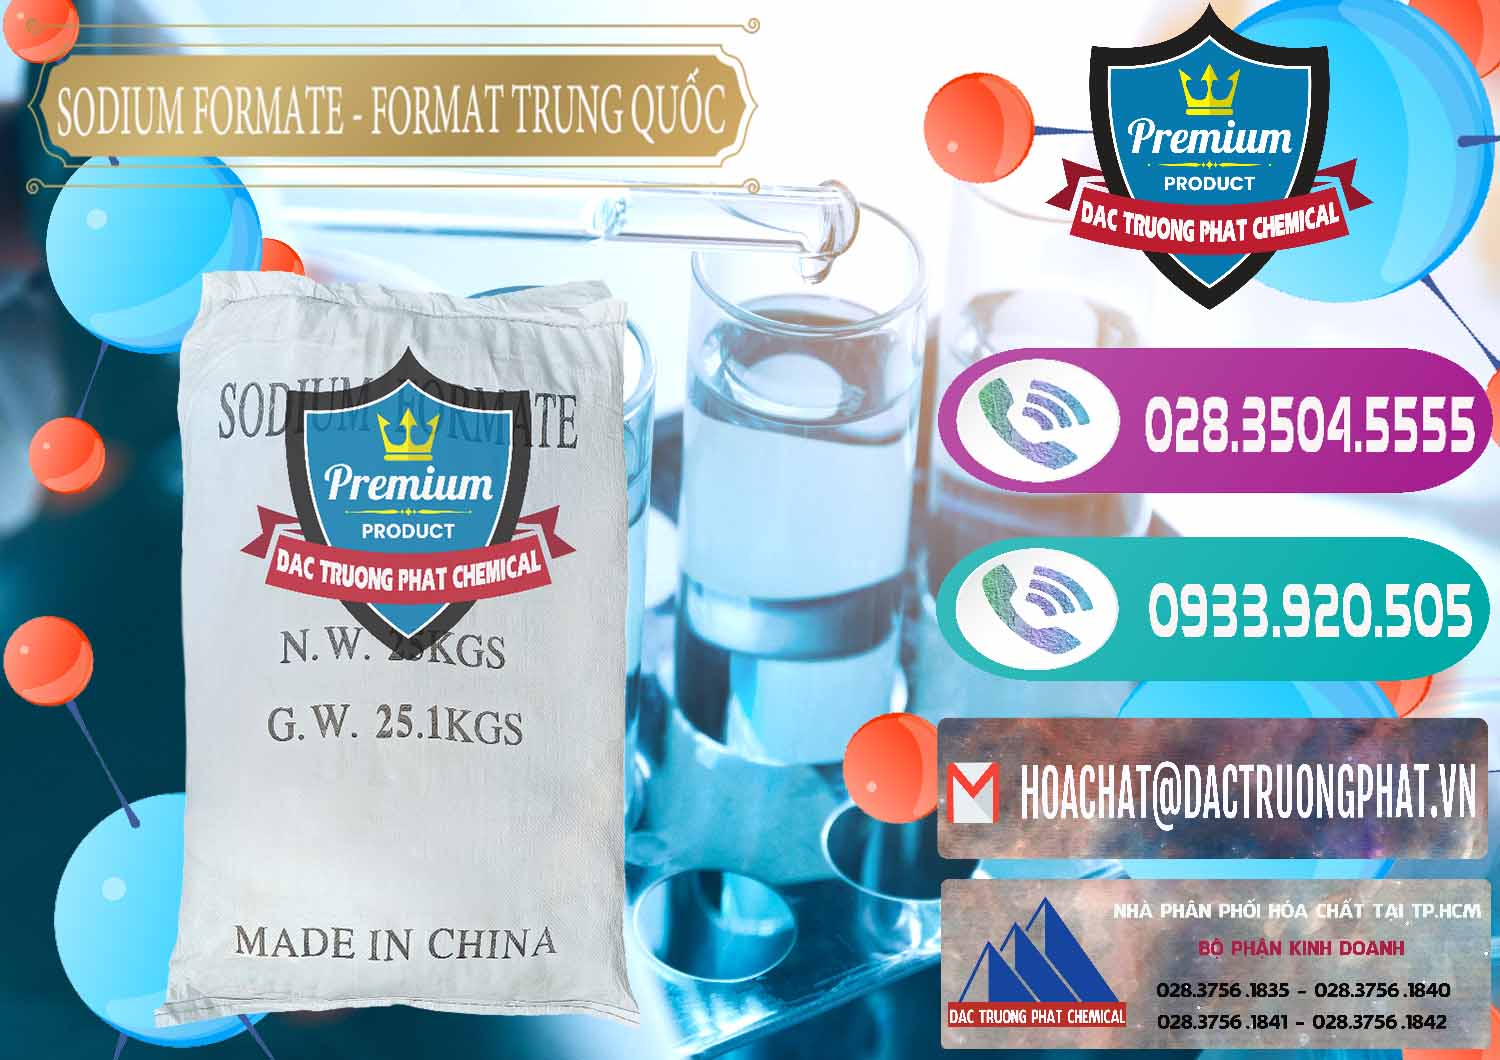 Đơn vị chuyên cung cấp _ bán Sodium Formate - Natri Format Trung Quốc China - 0142 - Cty chuyên phân phối & kinh doanh hóa chất tại TP.HCM - hoachatxulynuoc.com